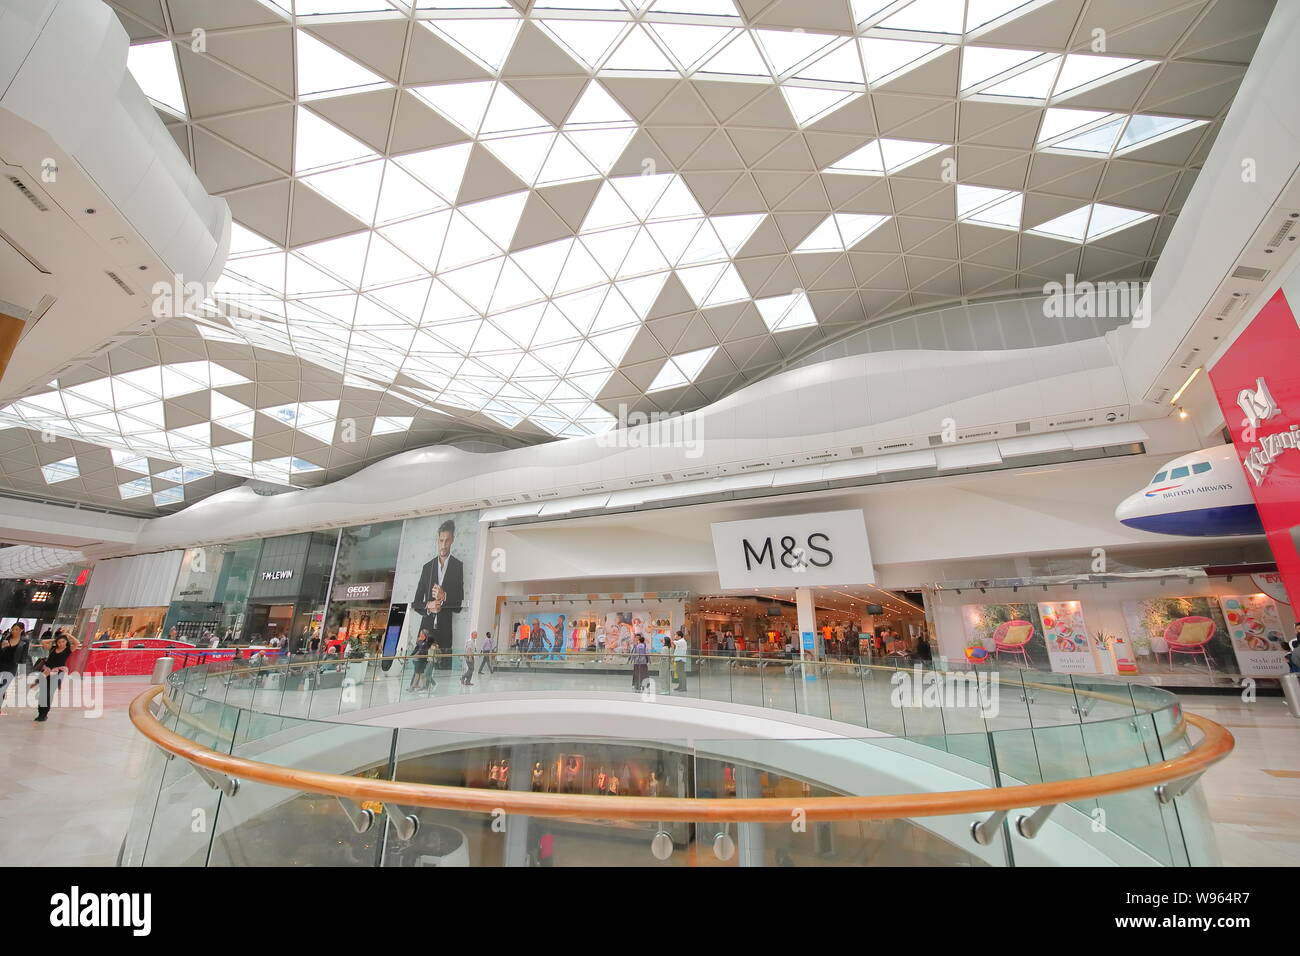 People visit Westfield shopping mall London UK Stock Photo - Alamy